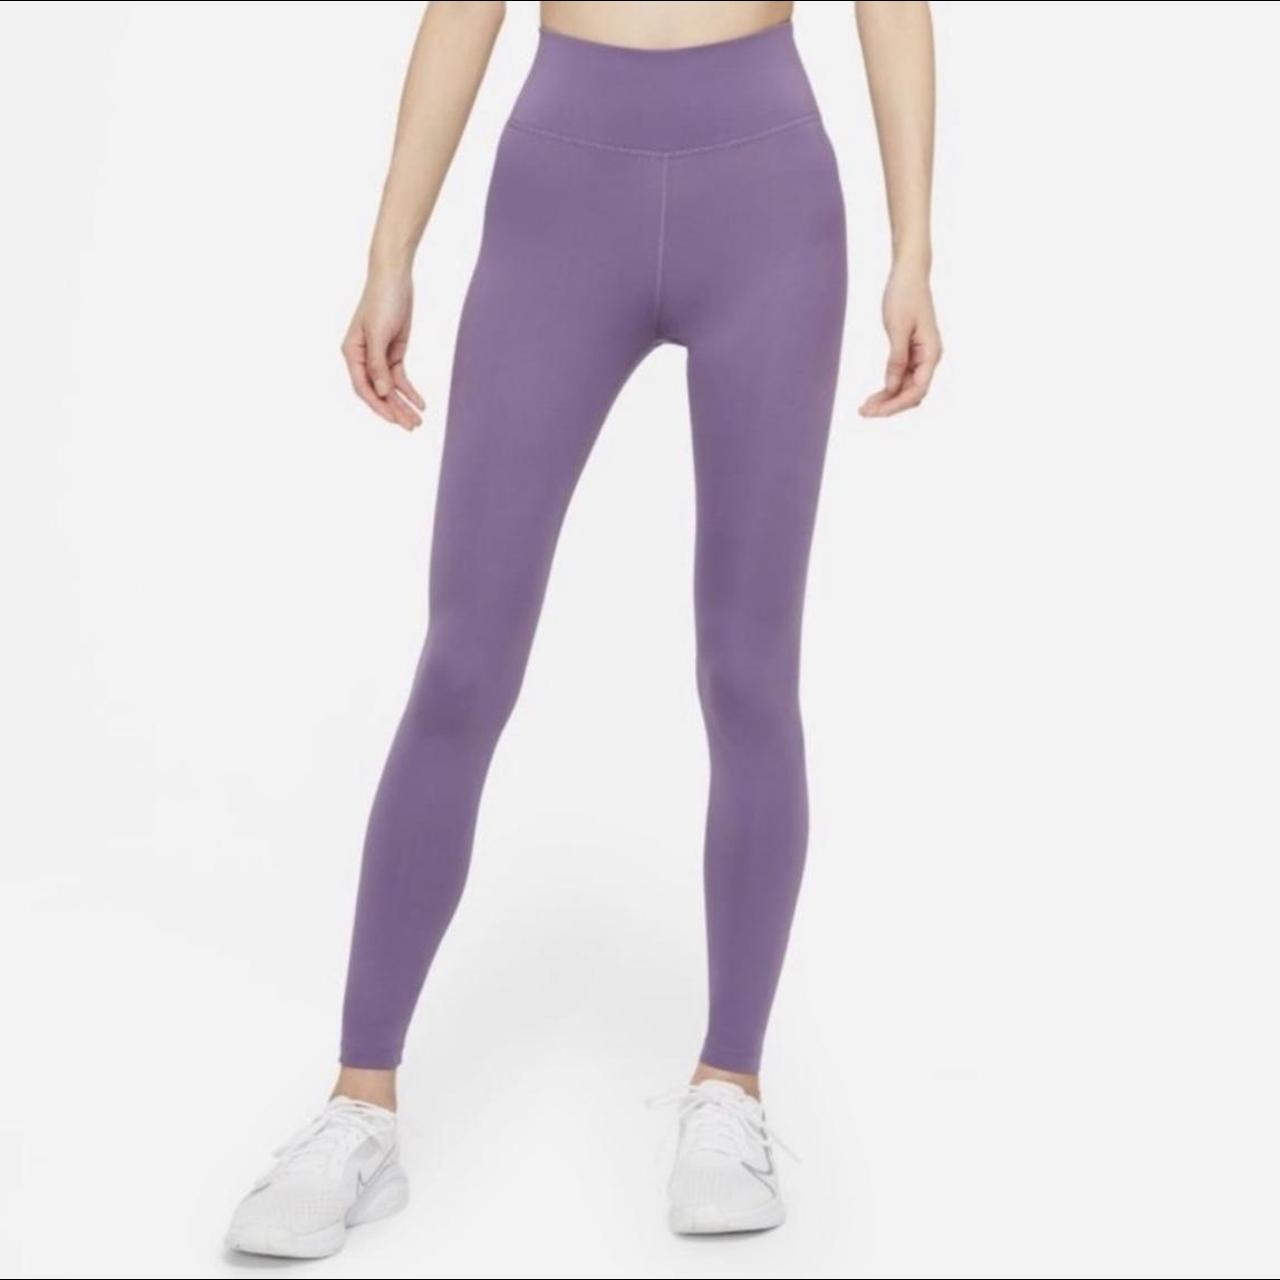 Nike Women's Purple Leggings | Depop